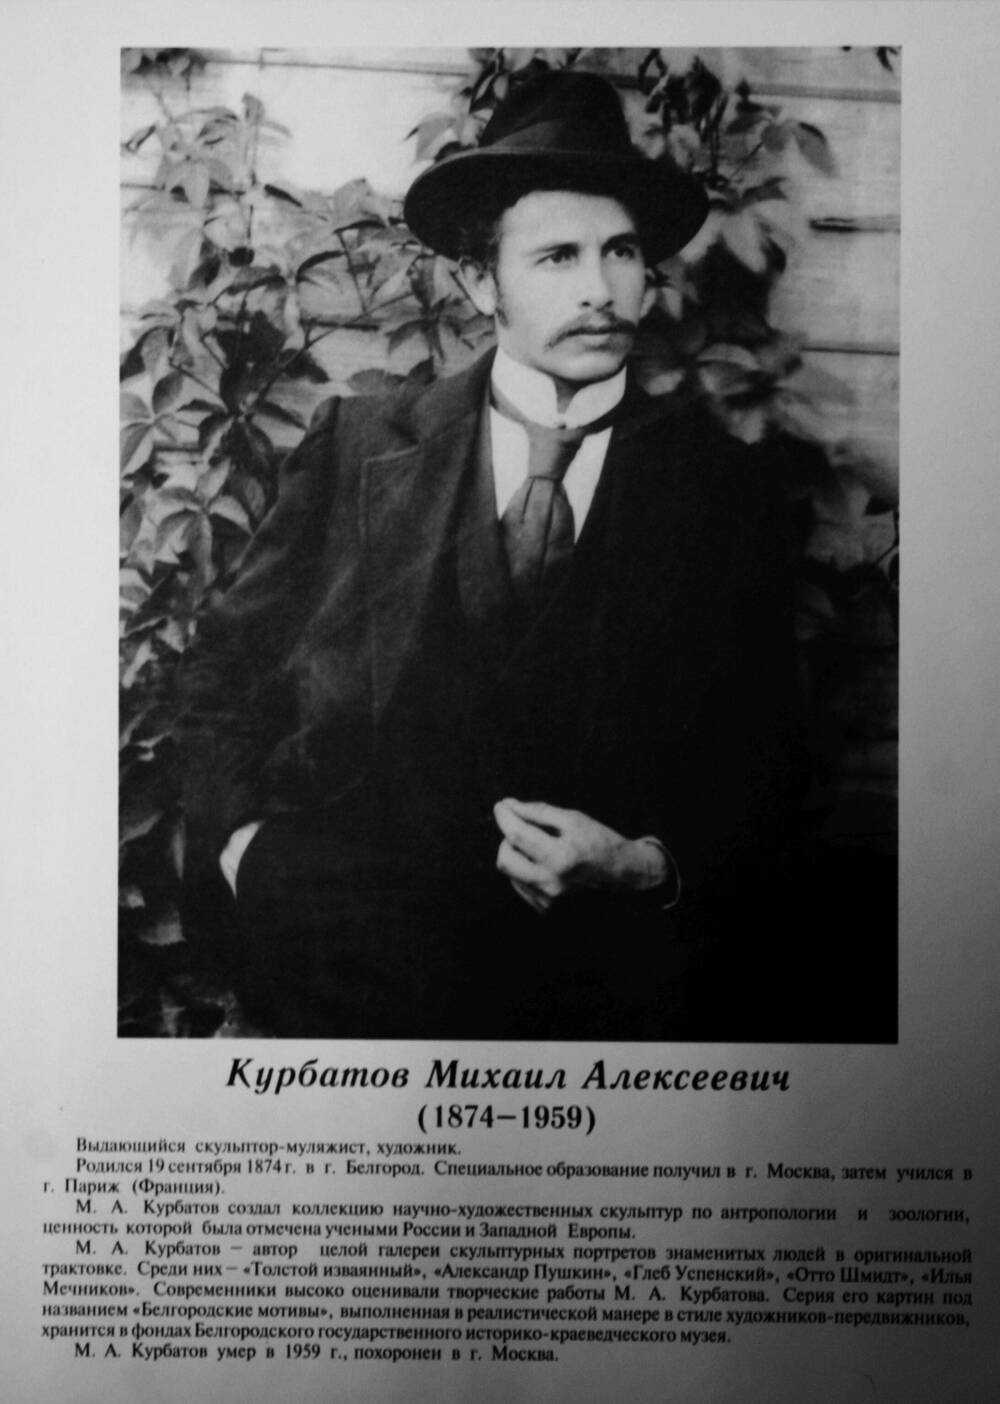 Плакат (фотопортрет) из комплекта Галерея славных имен Белгородчины. Курбатов Михаил Алексеевич (1874-1959).